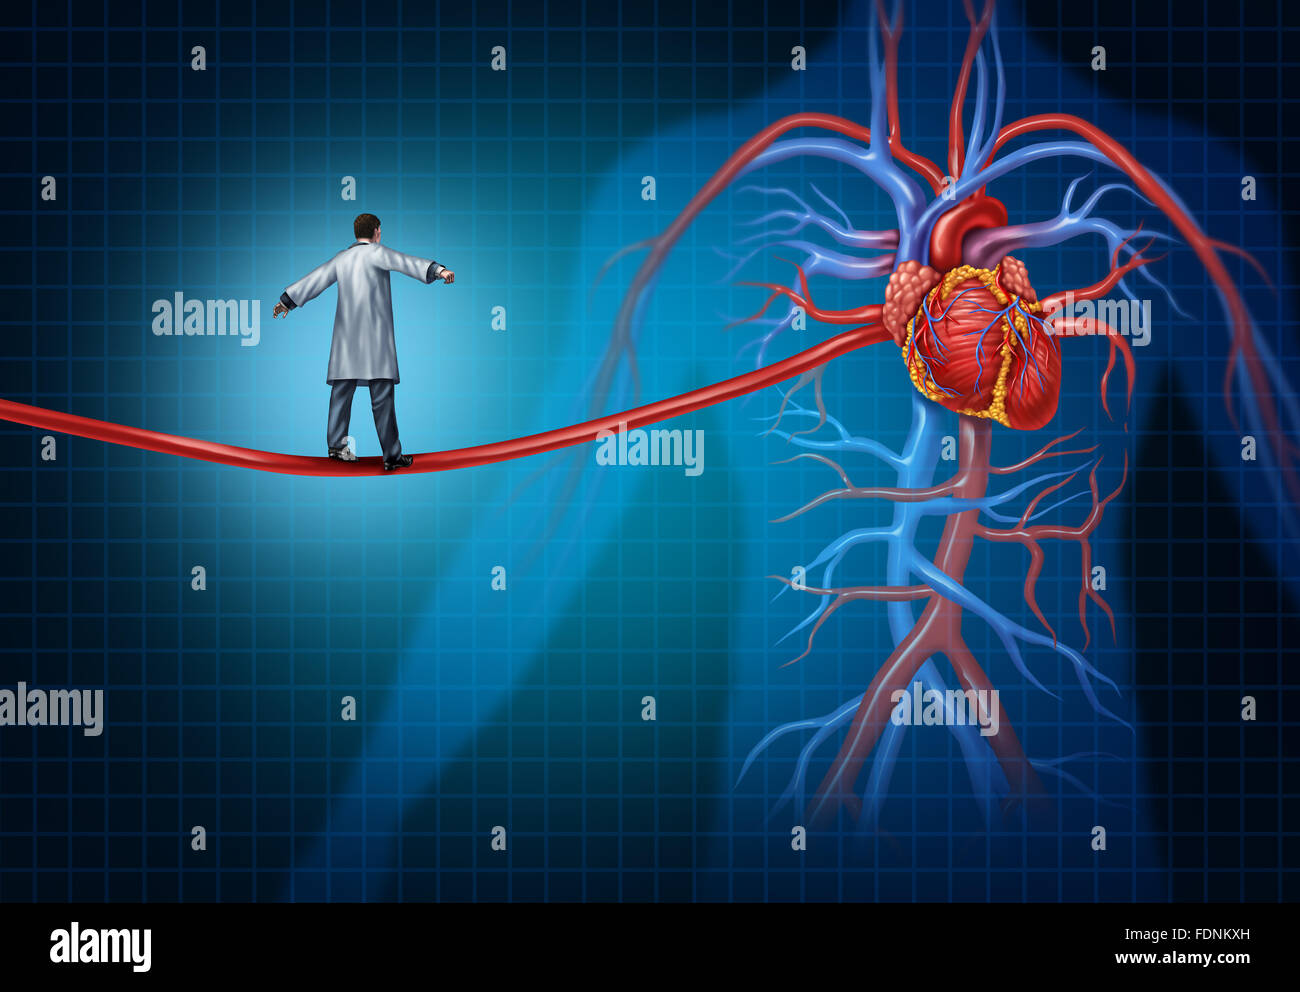 La chirurgie cardiaque concept comme un chirurgien cardiaque à marcher sur une artère sous forme d'un câble métallique à l'leadsing cardiovasculaire intérieur Banque D'Images